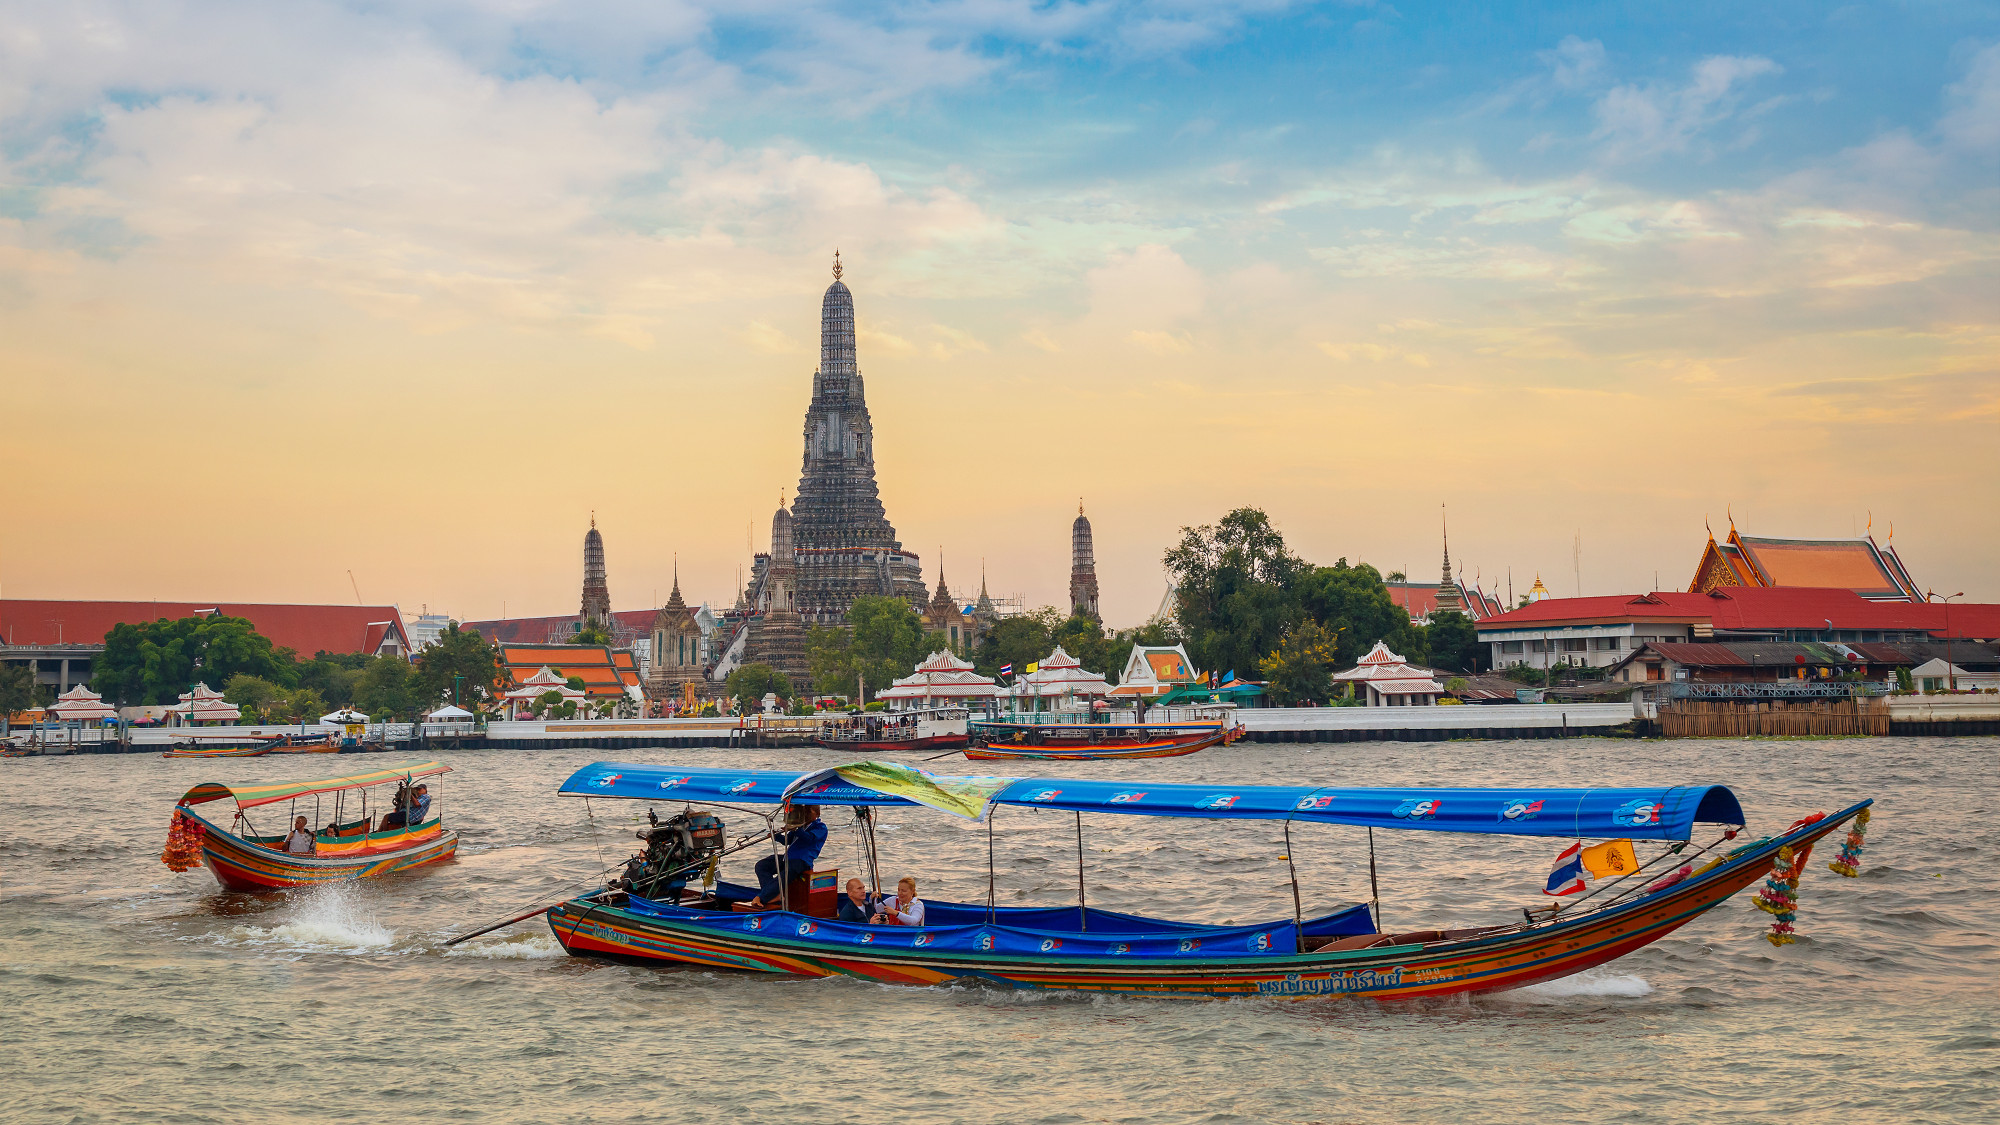 Sông Chao Phraya hay còn được nhắc đến với cái tên Sông Mê Nam. Là một trong những dòng sông lớn mang đậm nét huyền thoại của Thái Lan. Trong những vùng đất dòng sông này đi qua, nổi tiếng nhất phải kể đến khúc sông chảy qua trung tâm thành phố Bangkok. Với hai bên bờ nơi dòng sông chảy qua là những ngôi nhà cao tầng, cùng nhiều đền chùa nổi tiếng của Bangkok, đã tạo cho nơi đây một cảnh đẹp vô cùng thơ mộng mà hiếm nơi nào có được.